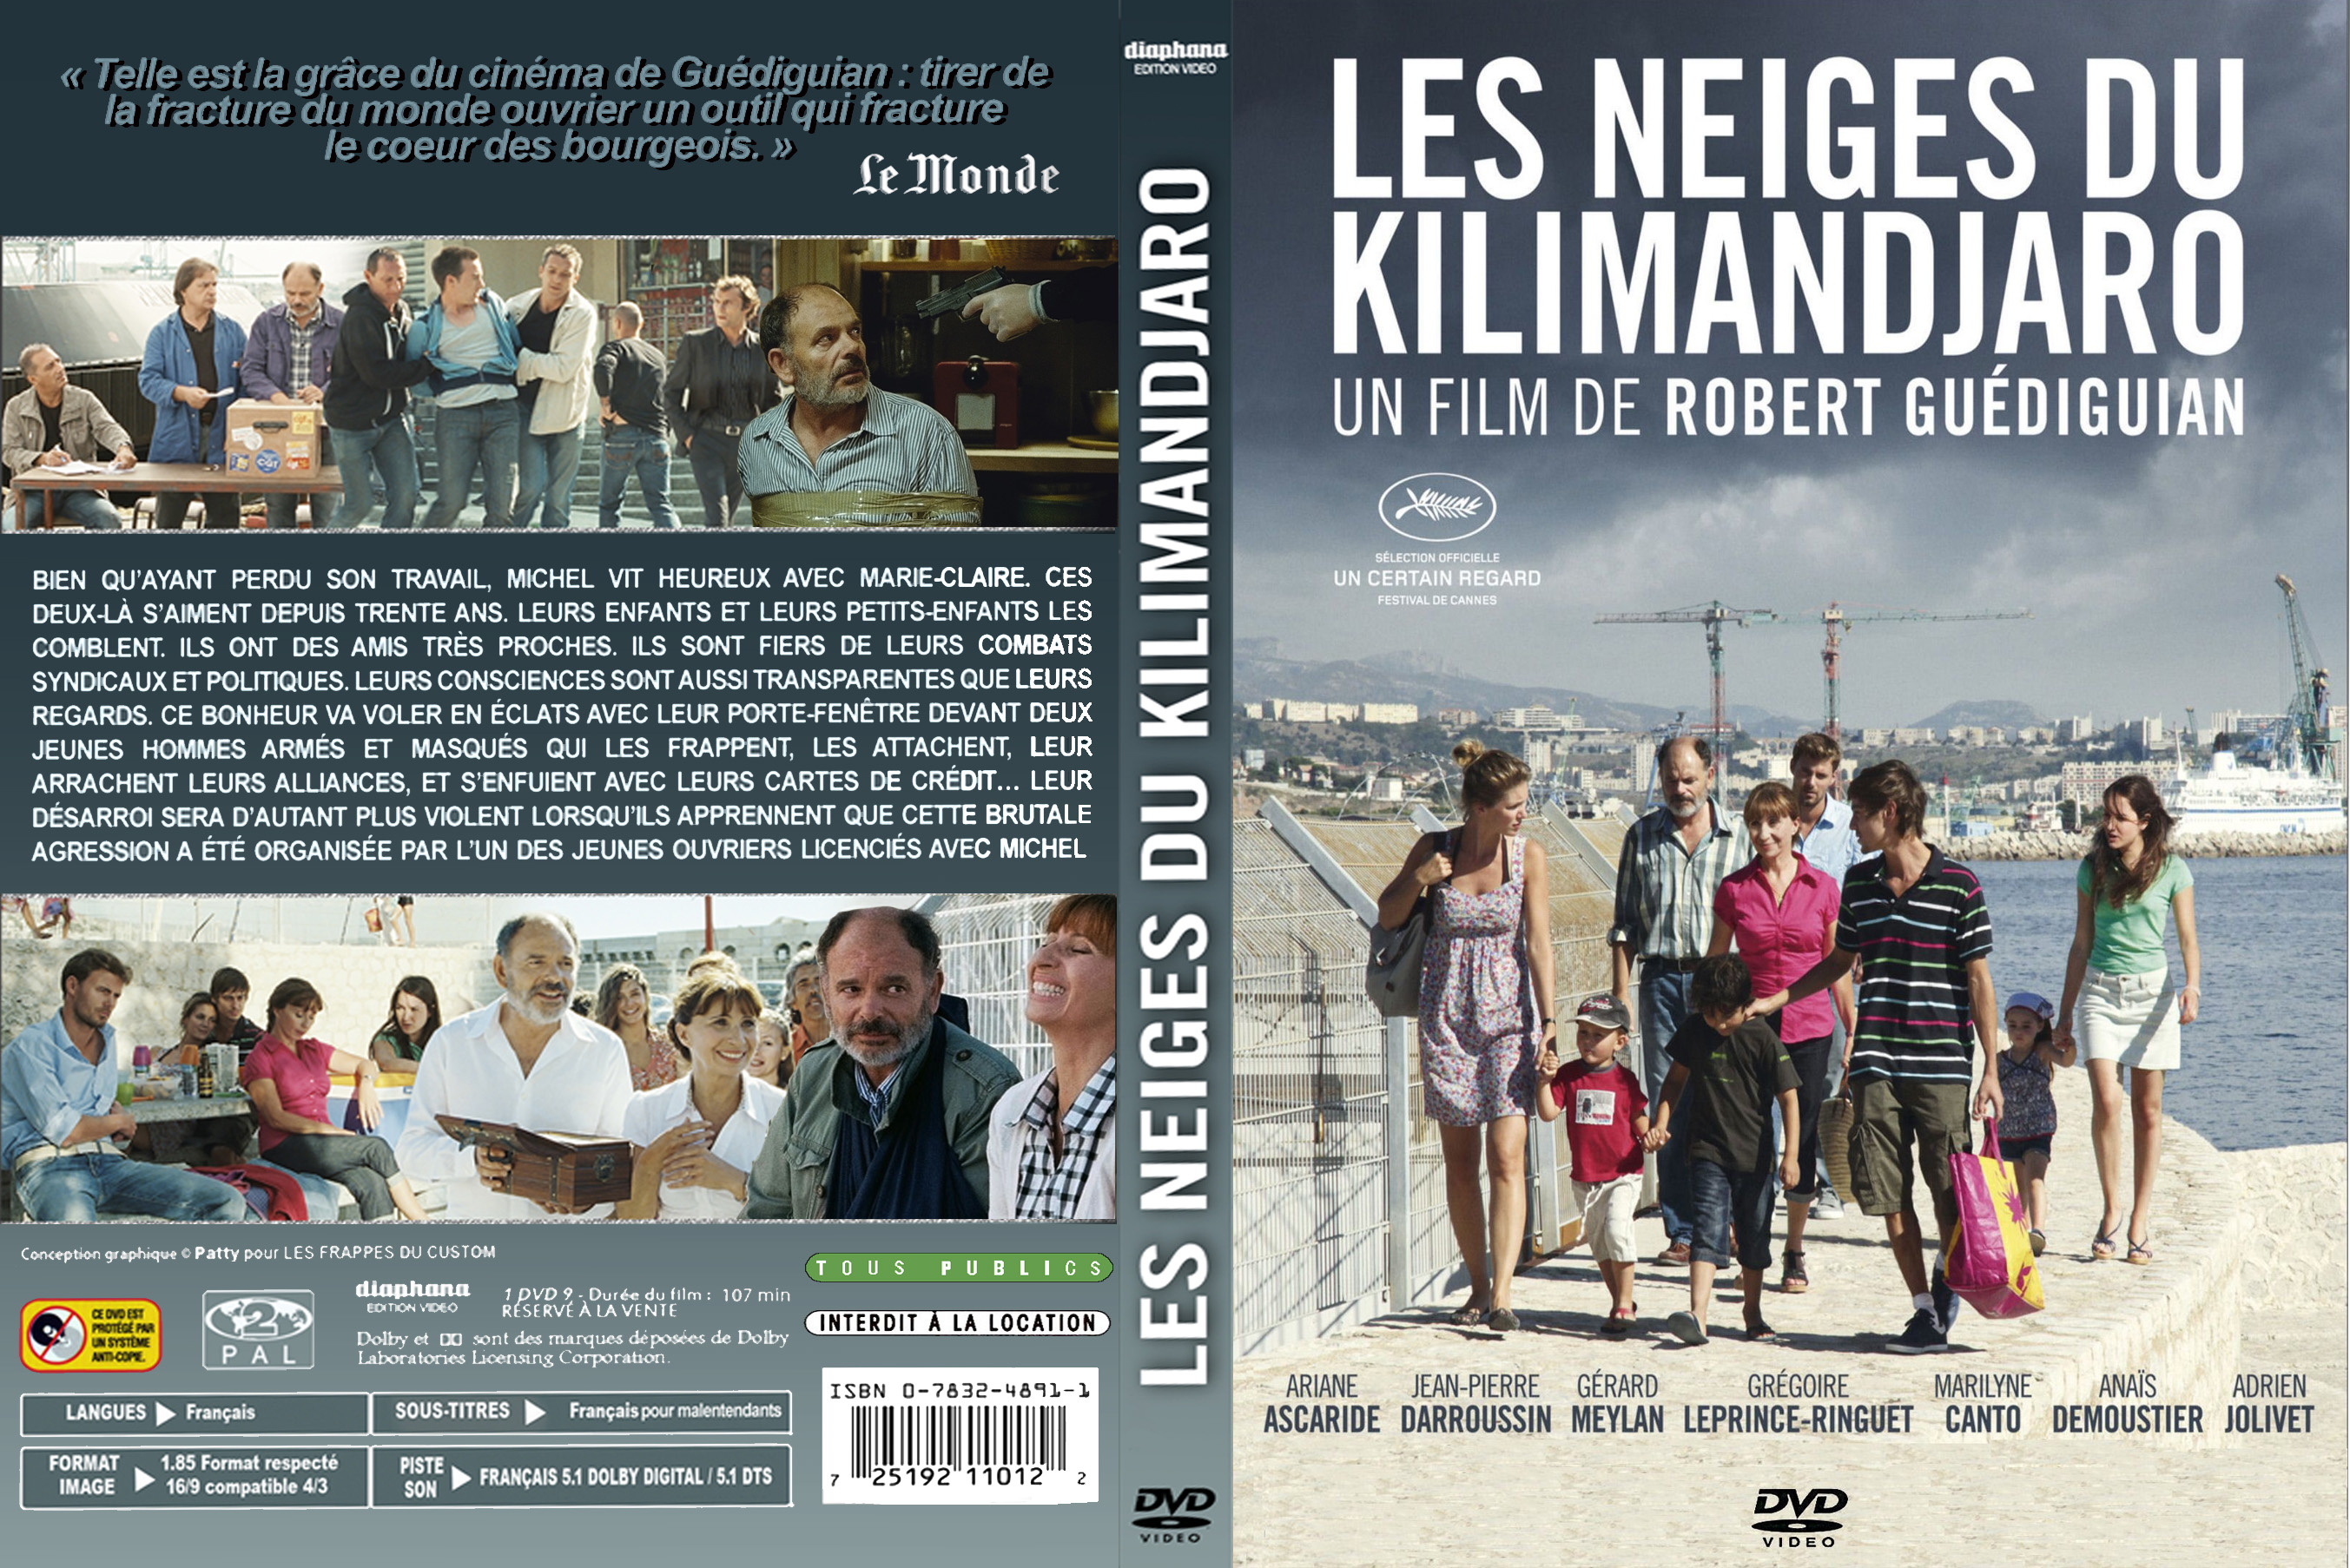 Jaquette DVD Les Neiges du Kilimandjaro (2011) custom v2